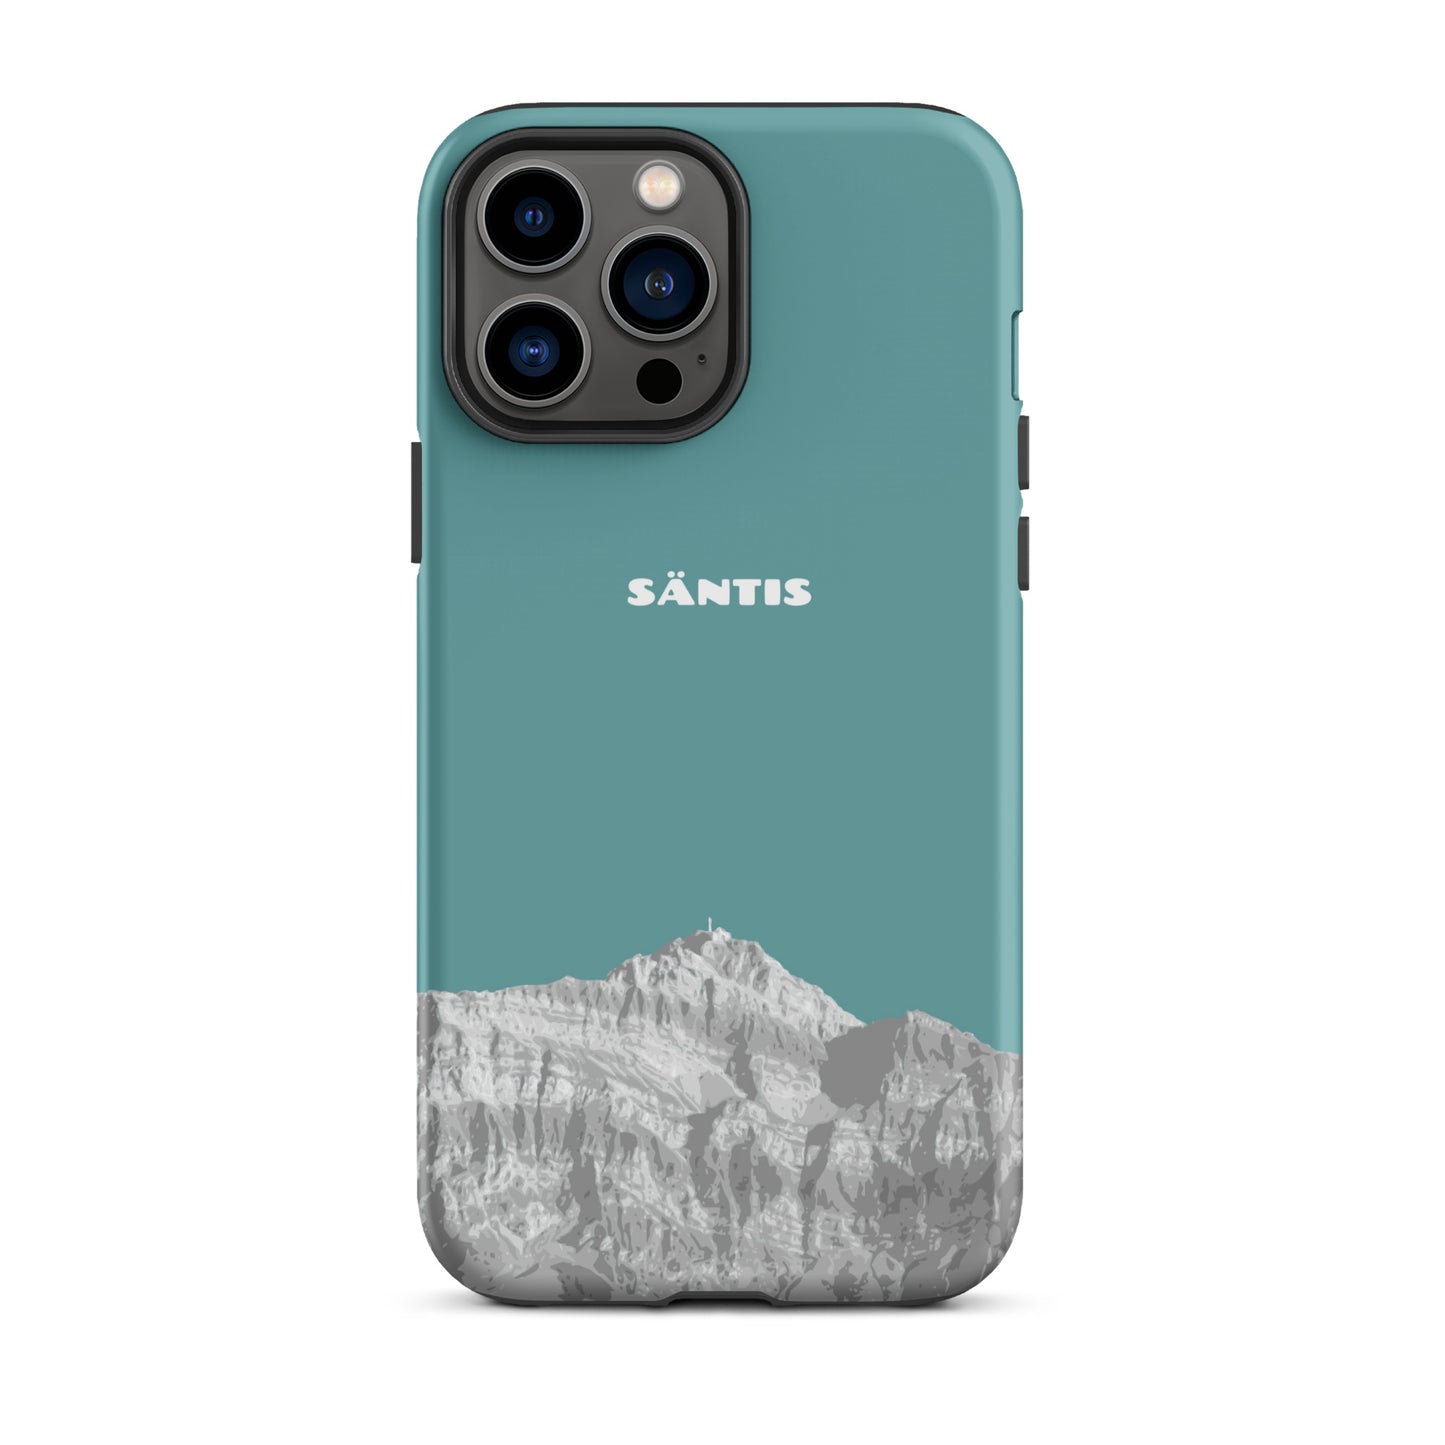 Hülle für das iPhone 13 Pro Max von Apple in der Farbe Kadettenblau, dass den Säntis im Alpstein zeigt.